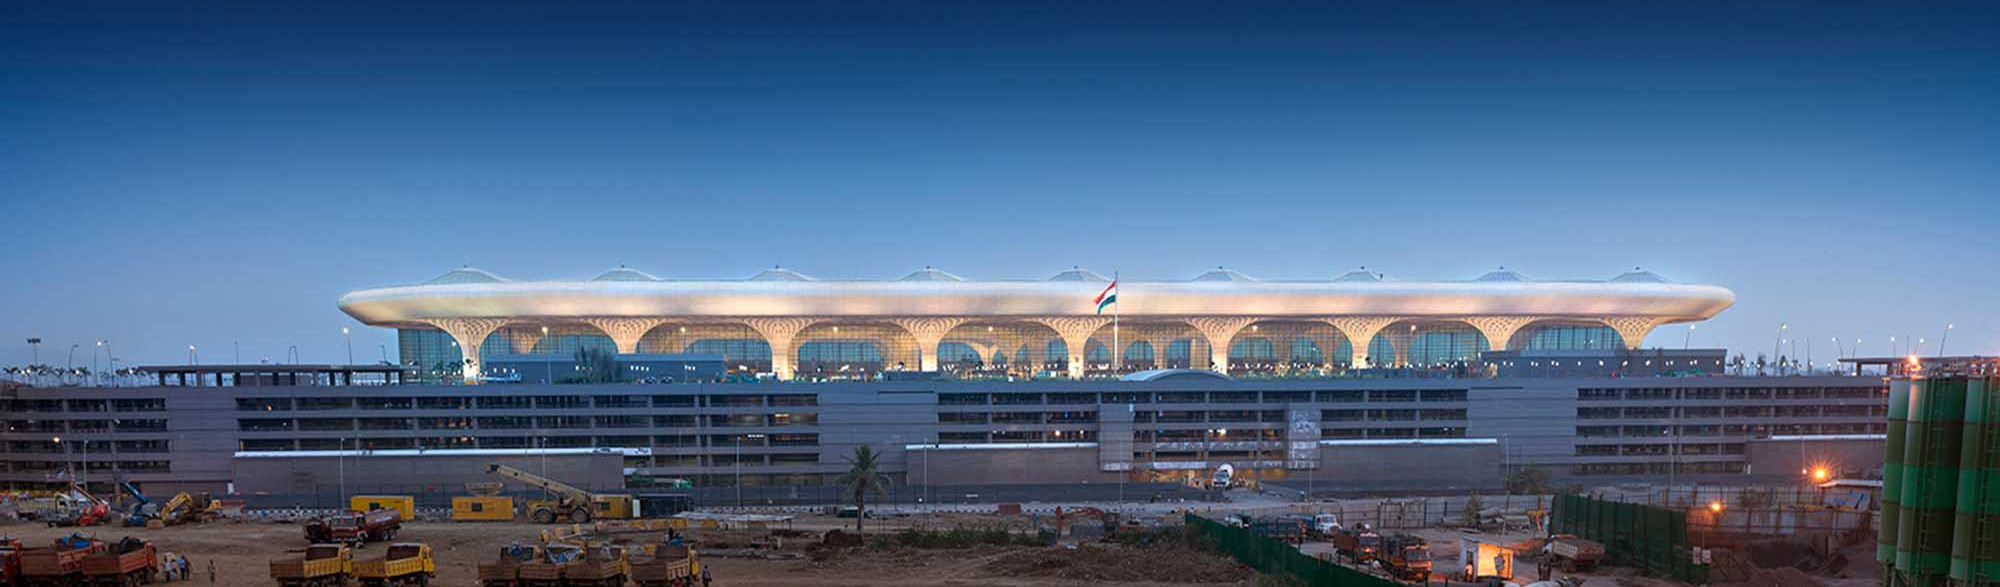 Mumbai ChhatrapatiShivaji Airport